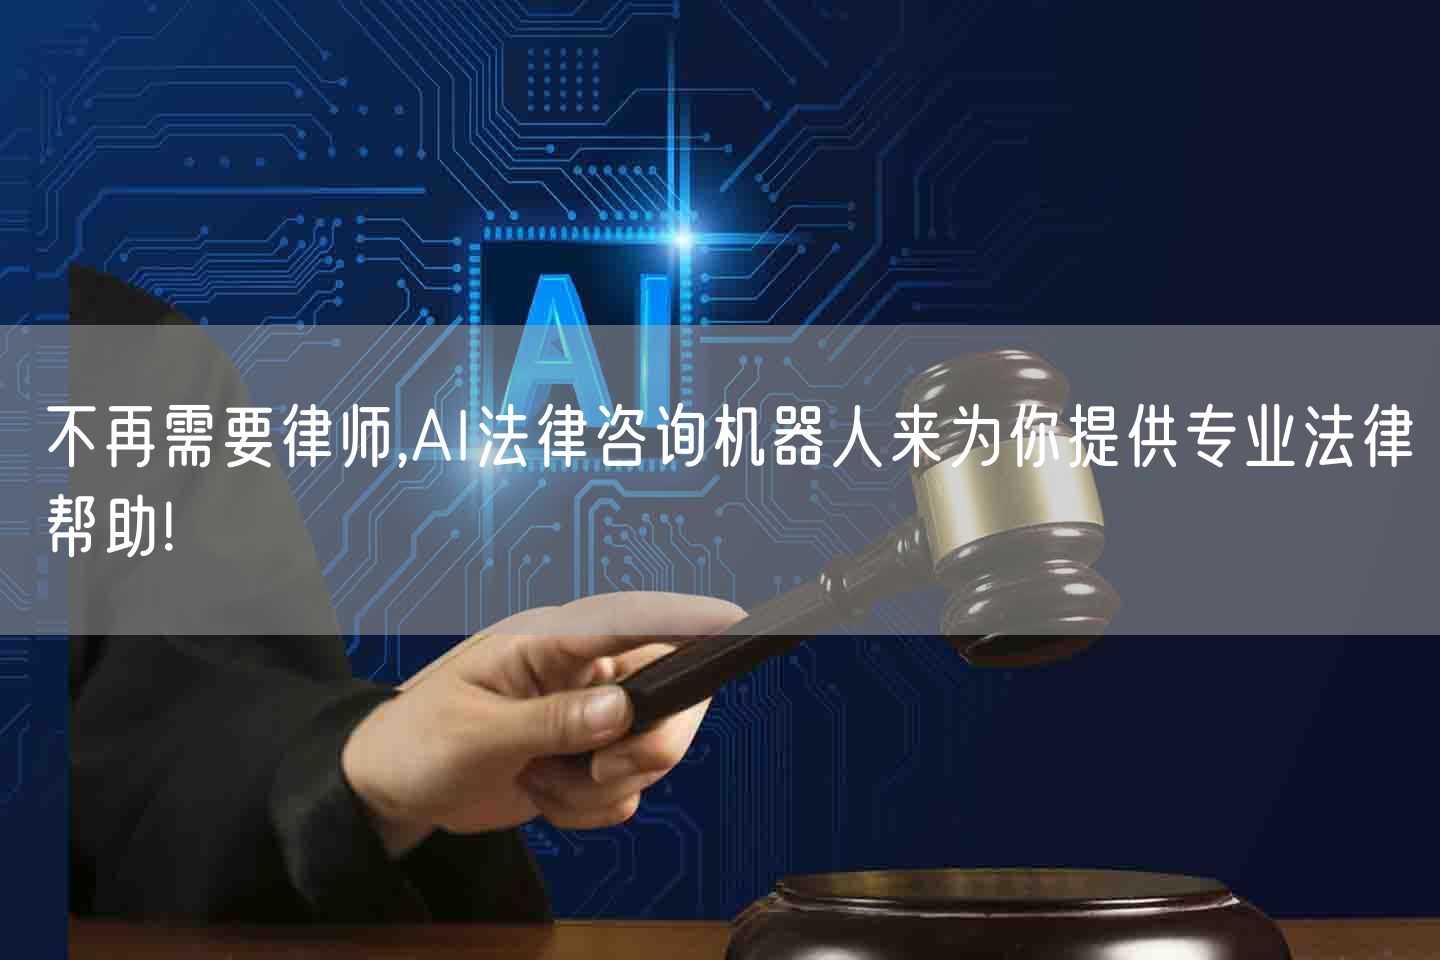 不再需要律师,AI法律咨询机器人来为你提供专业法律